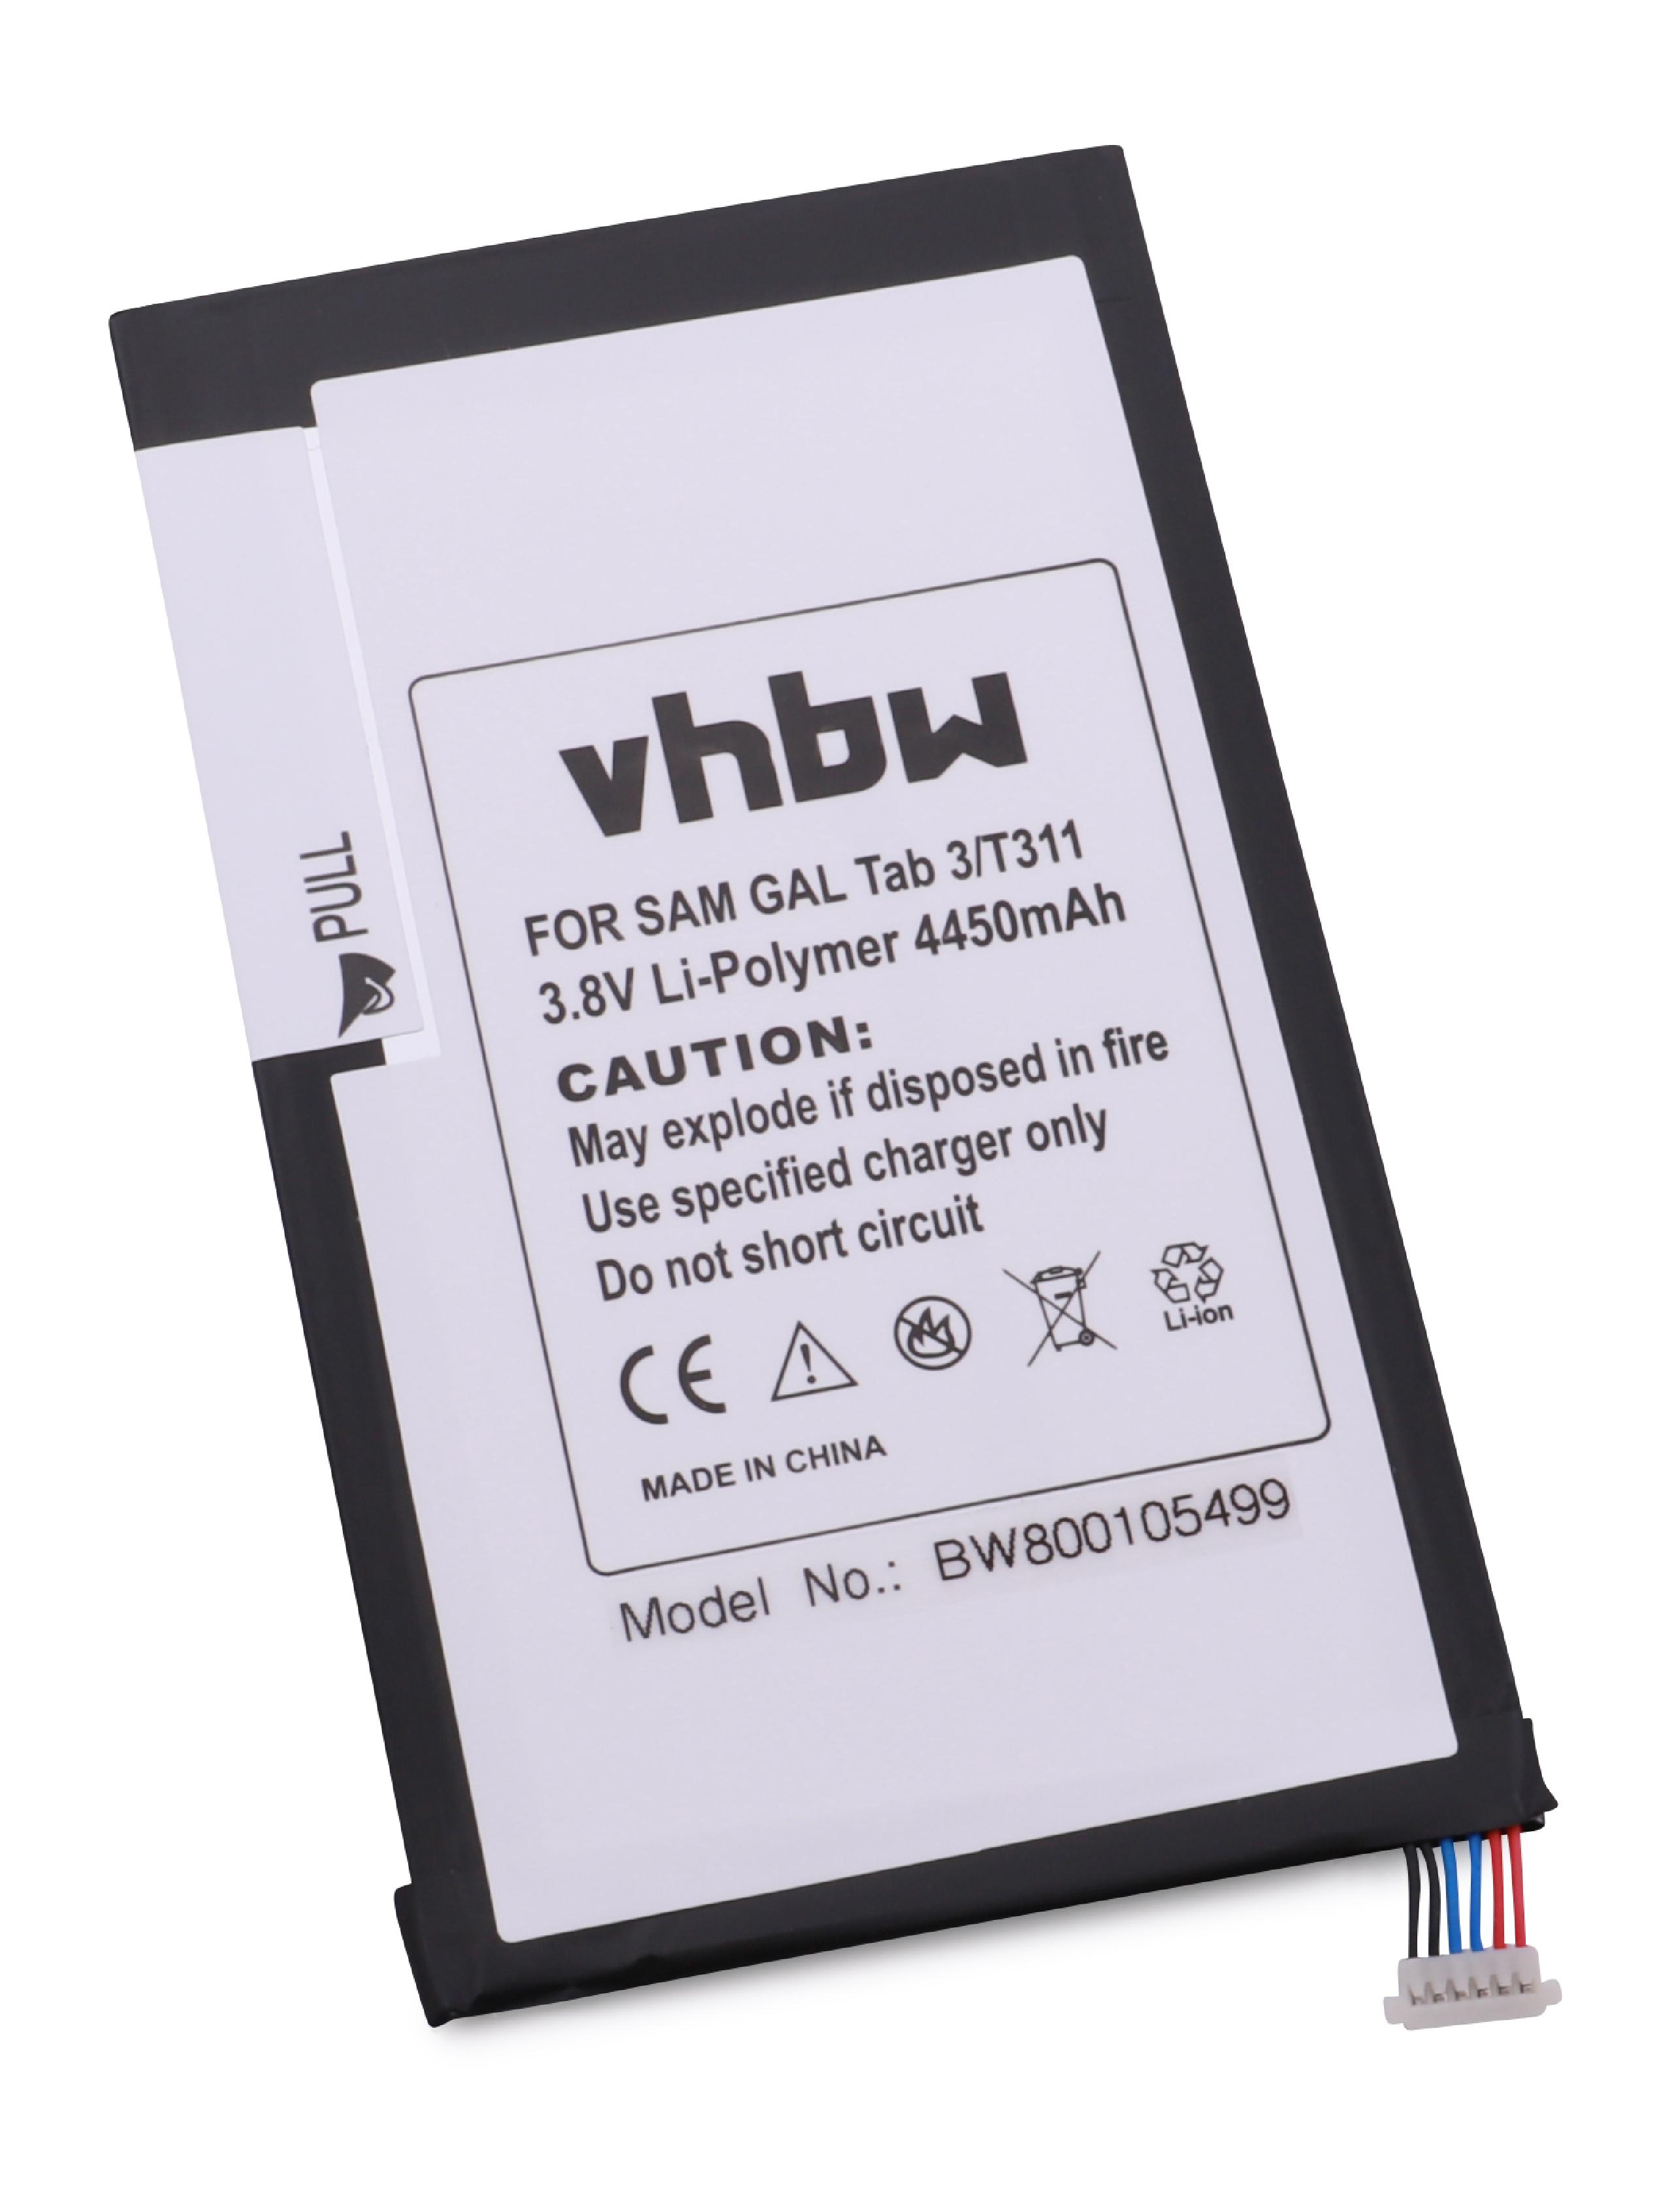 VHBW kompatibel mit Akku 8.0 Samsung Volt, 8.0 3G, 3, LTE, 8.0 3 WiFi, - SM-T3110 Galaxy SM-T310, Tab 3 4450 3.8 Li-Polymer SM-T311, Tablet, 3